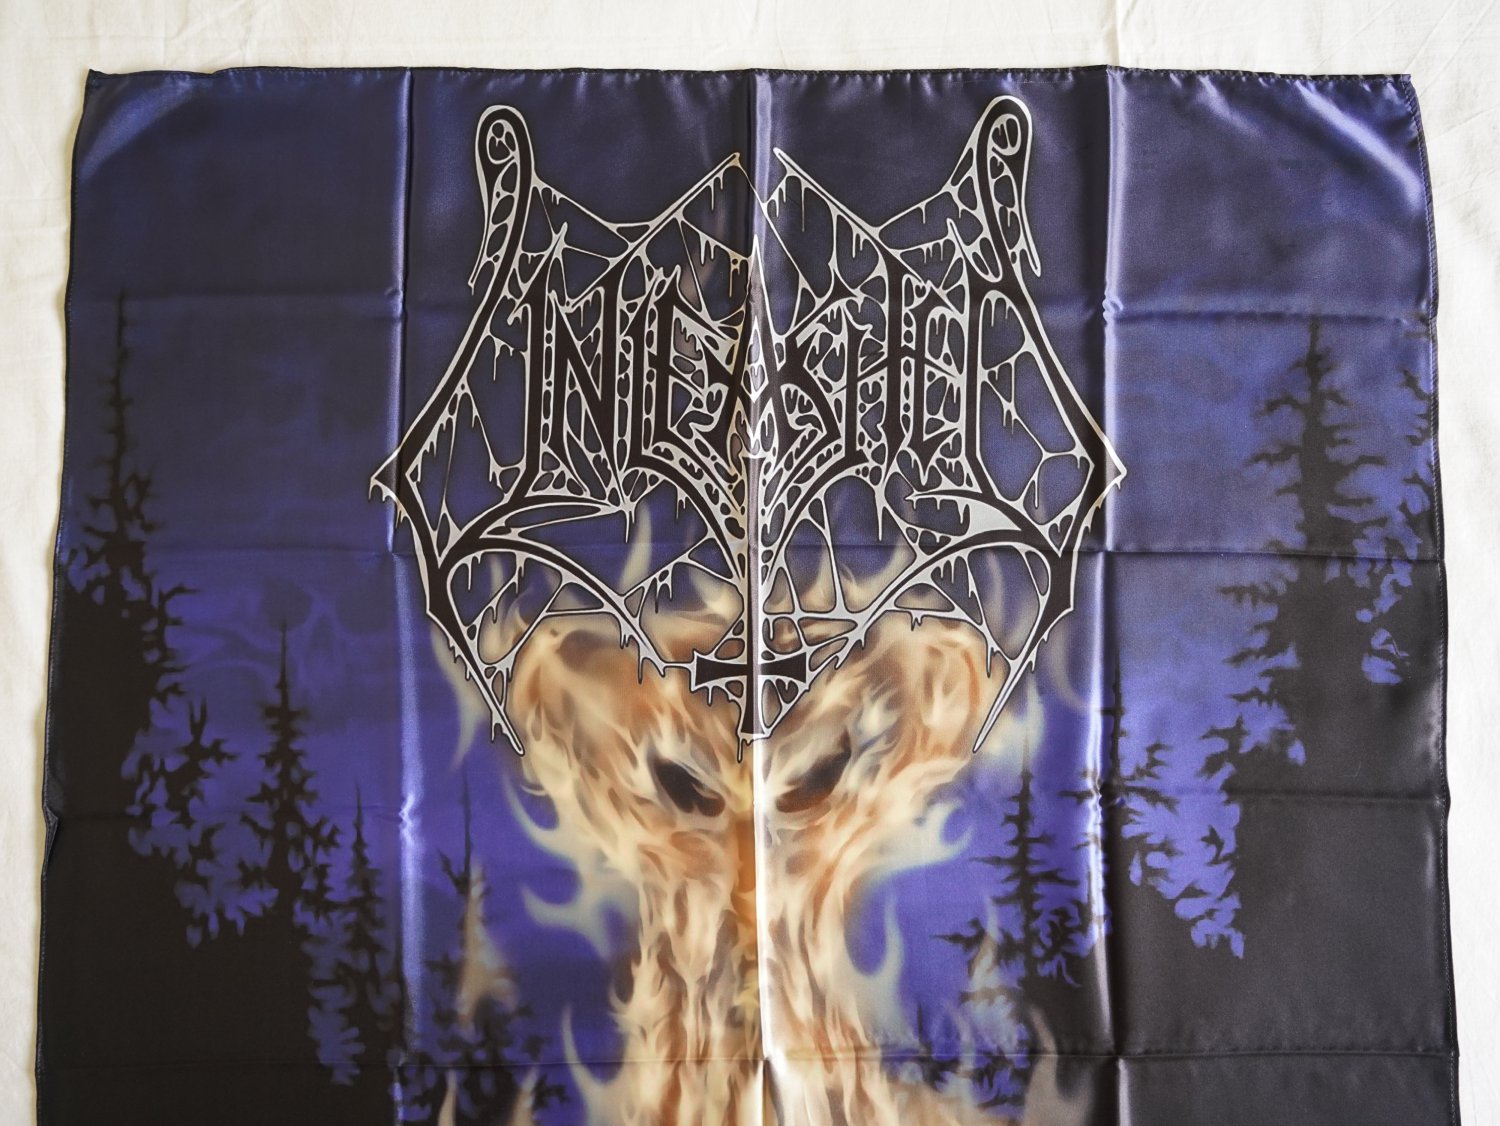 UNLEASHED - Midvinterblot FLAG cloth POSTER Banner Swedish Death METAL Entombed